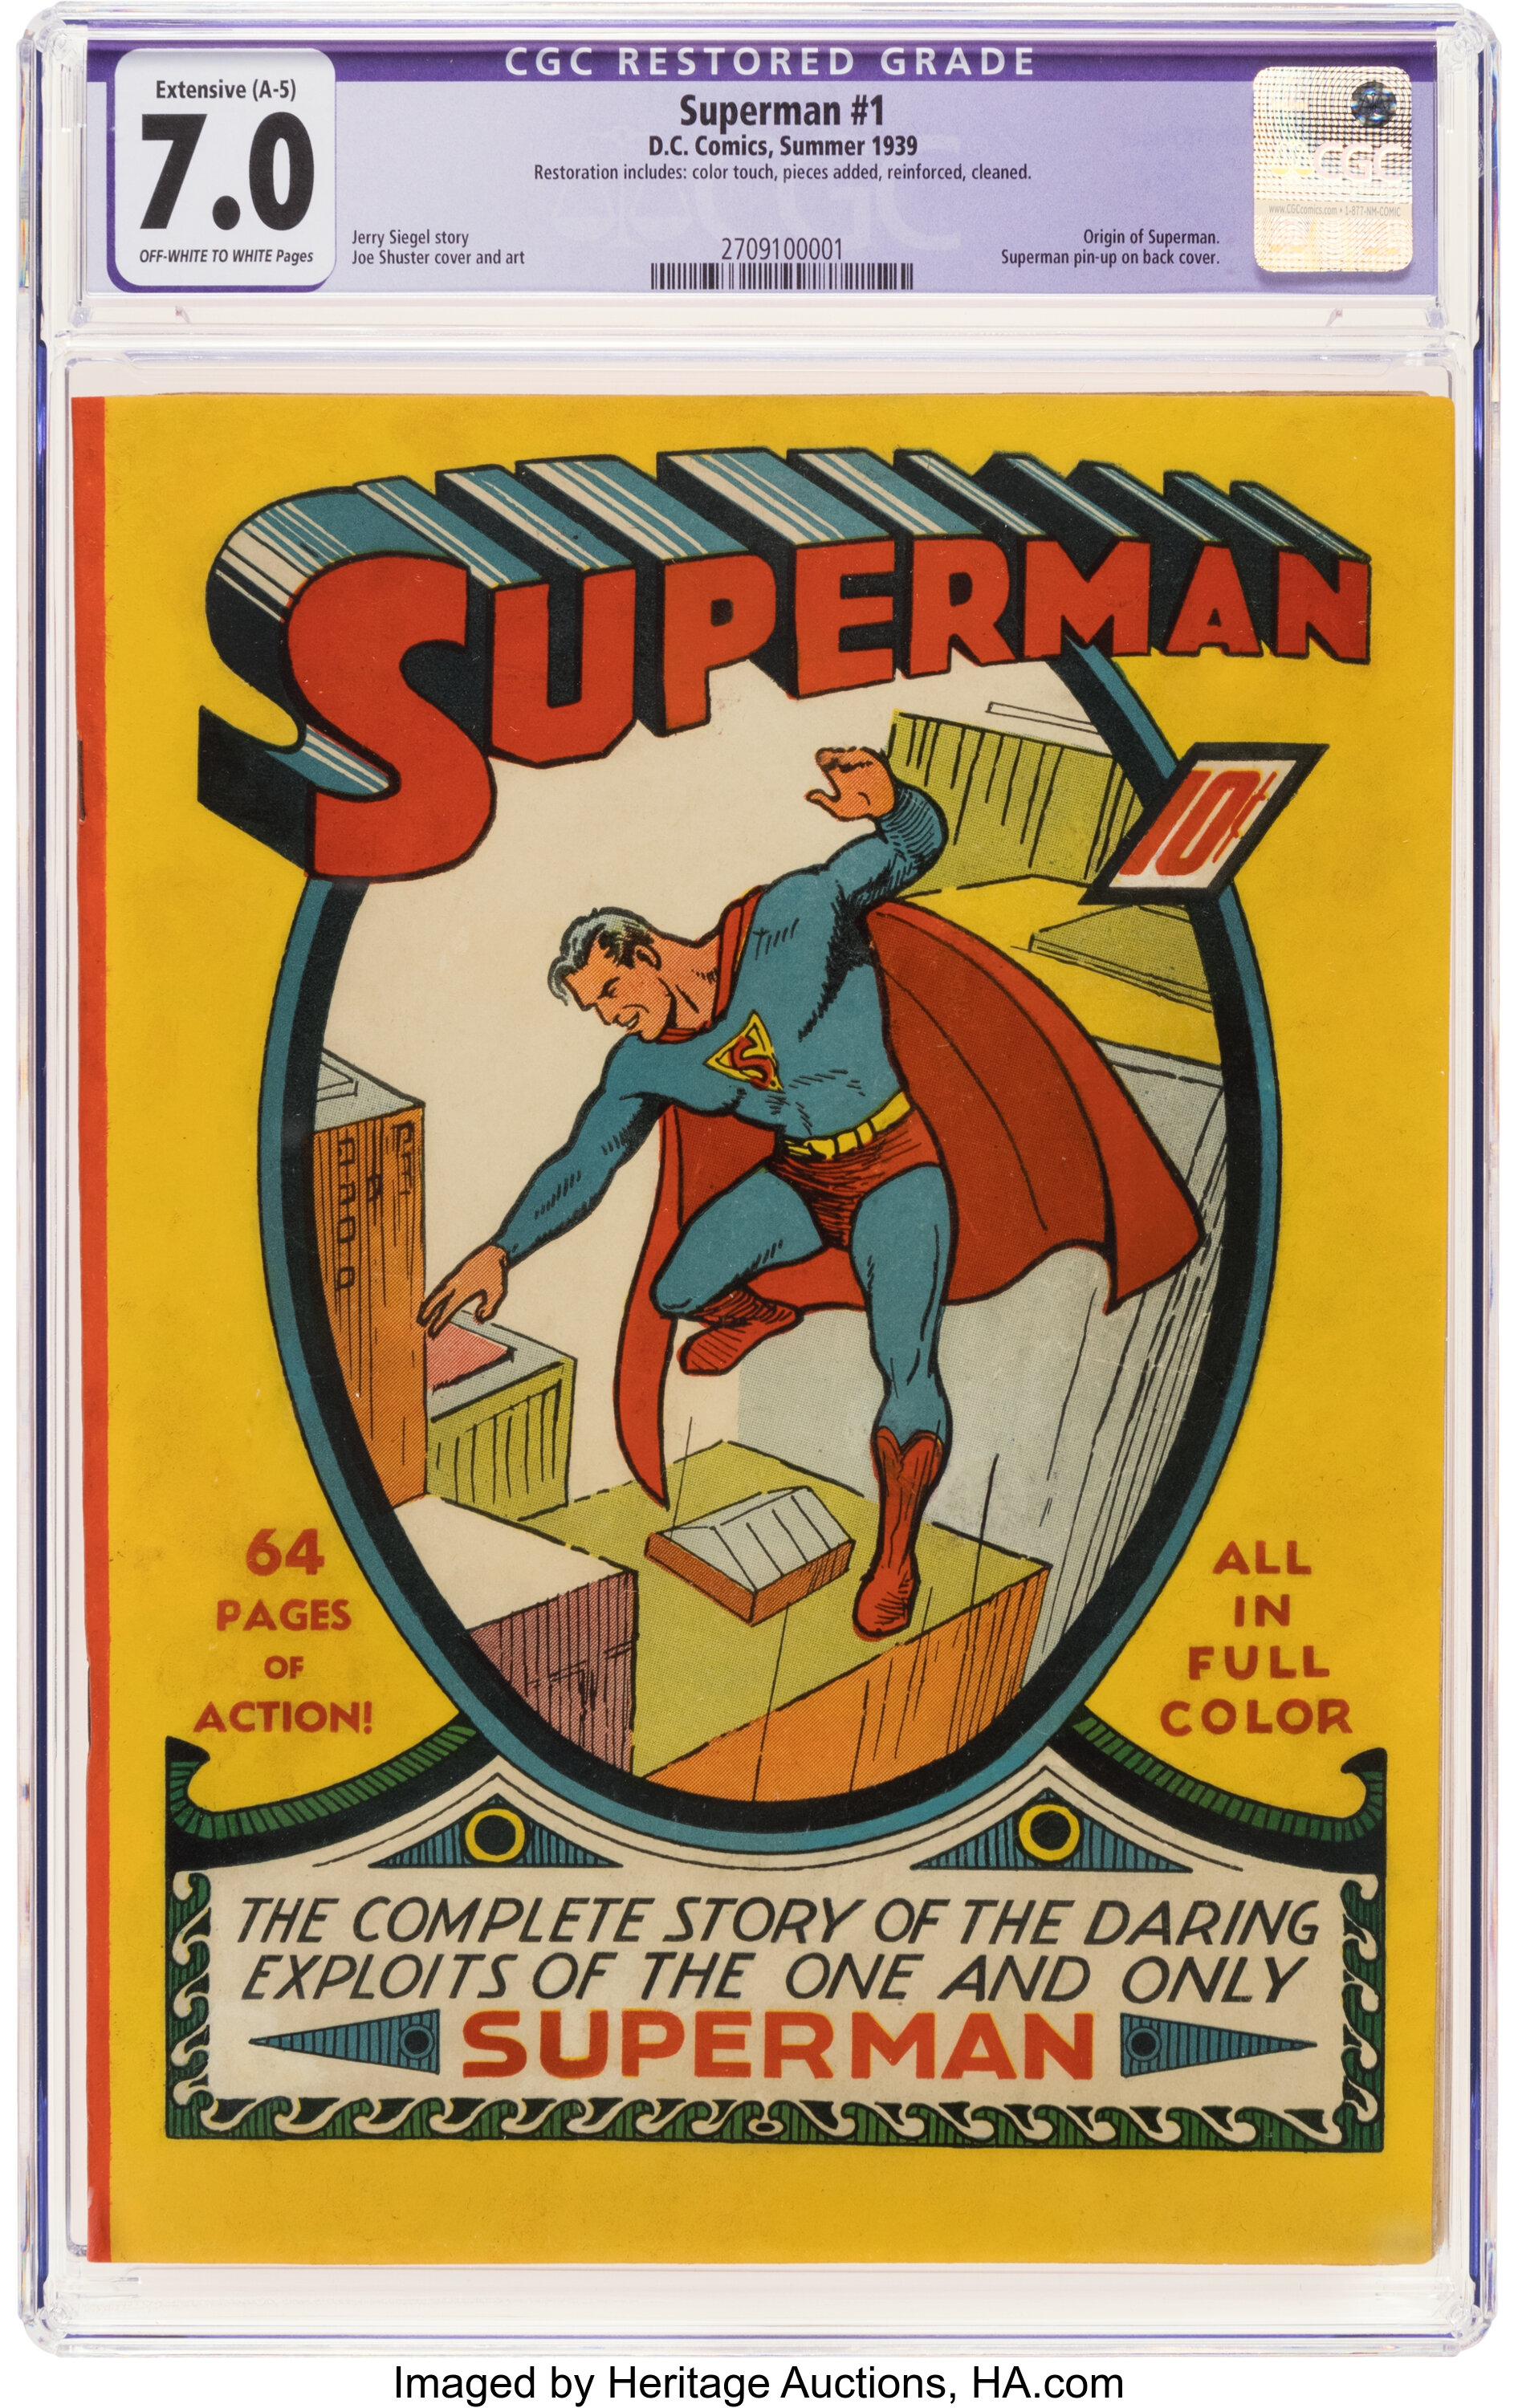 https://www.fortalezadelasoledad.com/imagenes/2022/09/02/heritage_auctions_superman_1_cgc_7.jpg